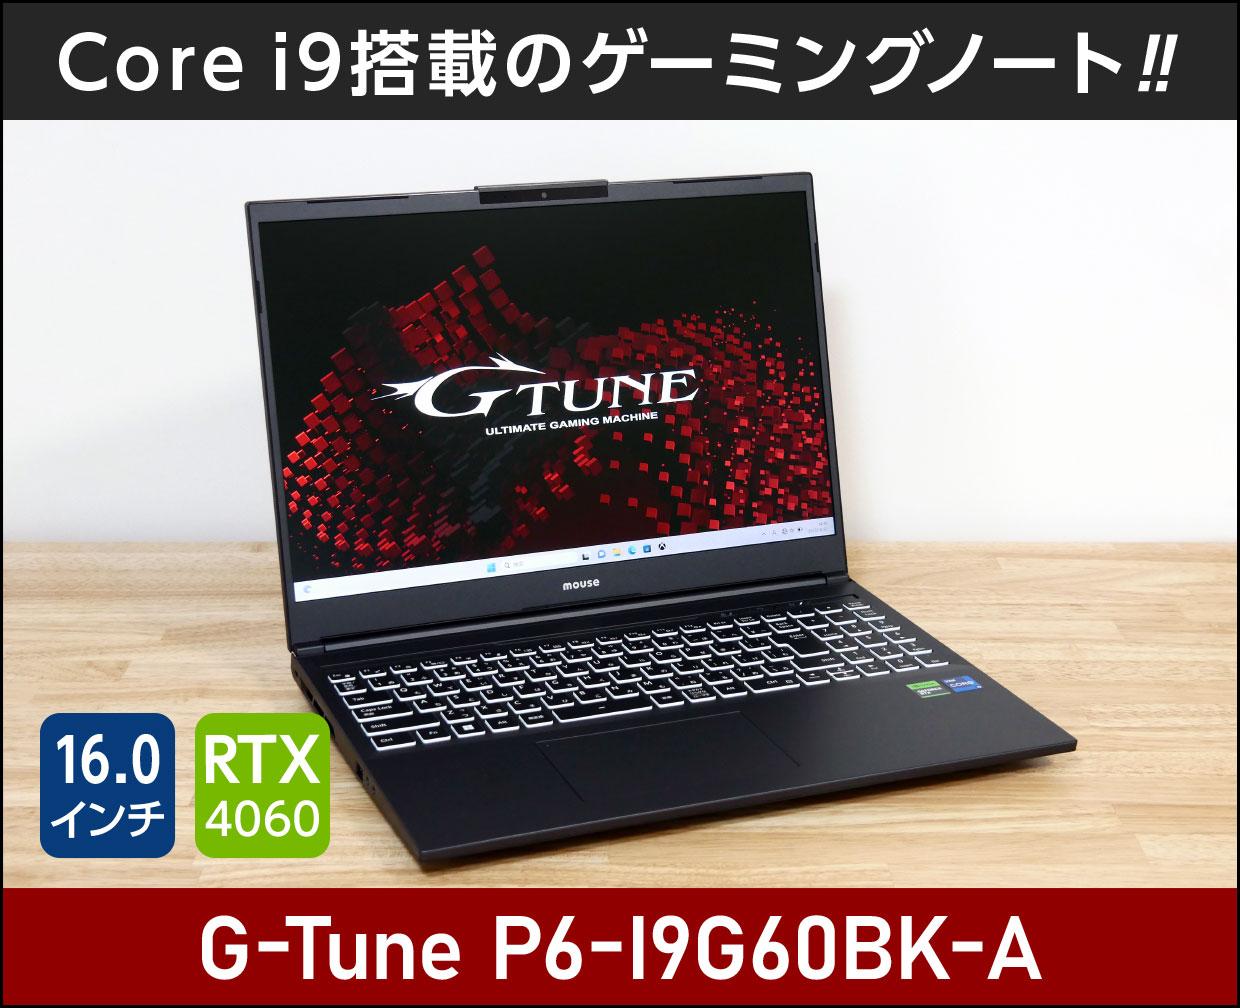 マウスコンピューター G-Tune P6-I9G60BK-Aのメイン画像